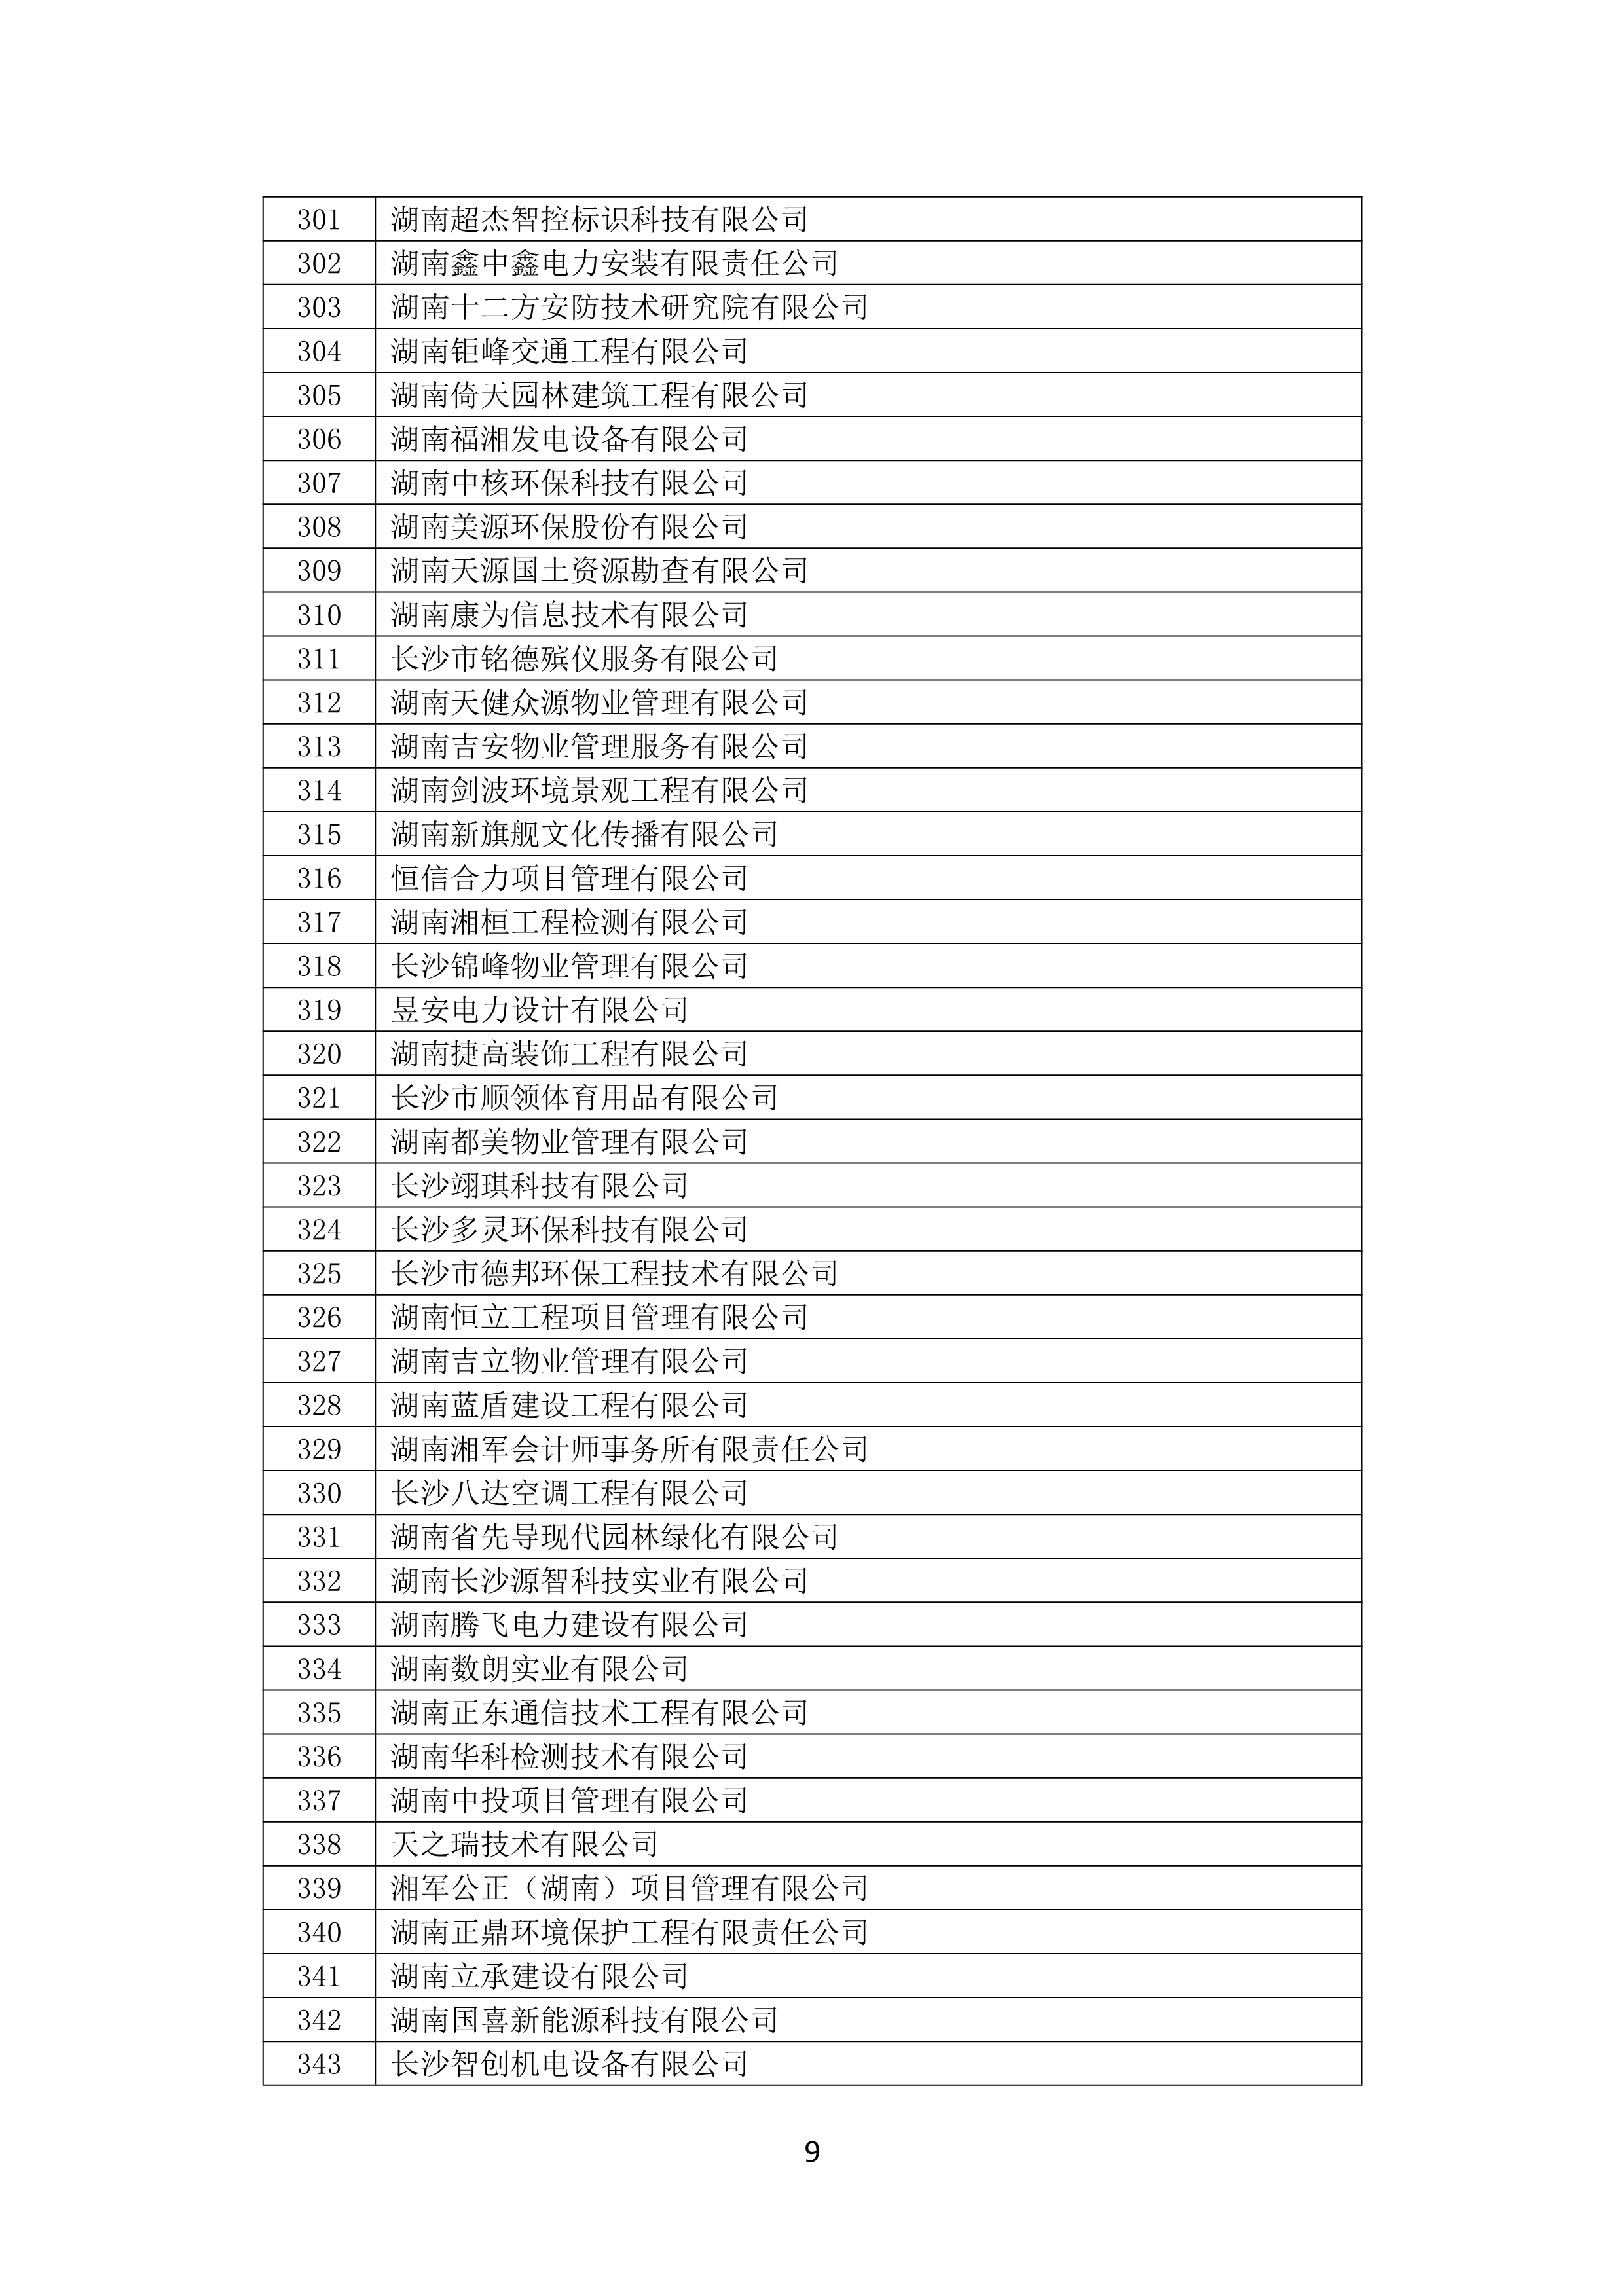 2021 年(nián)度湖南省守合同重信用企業名單_10.png